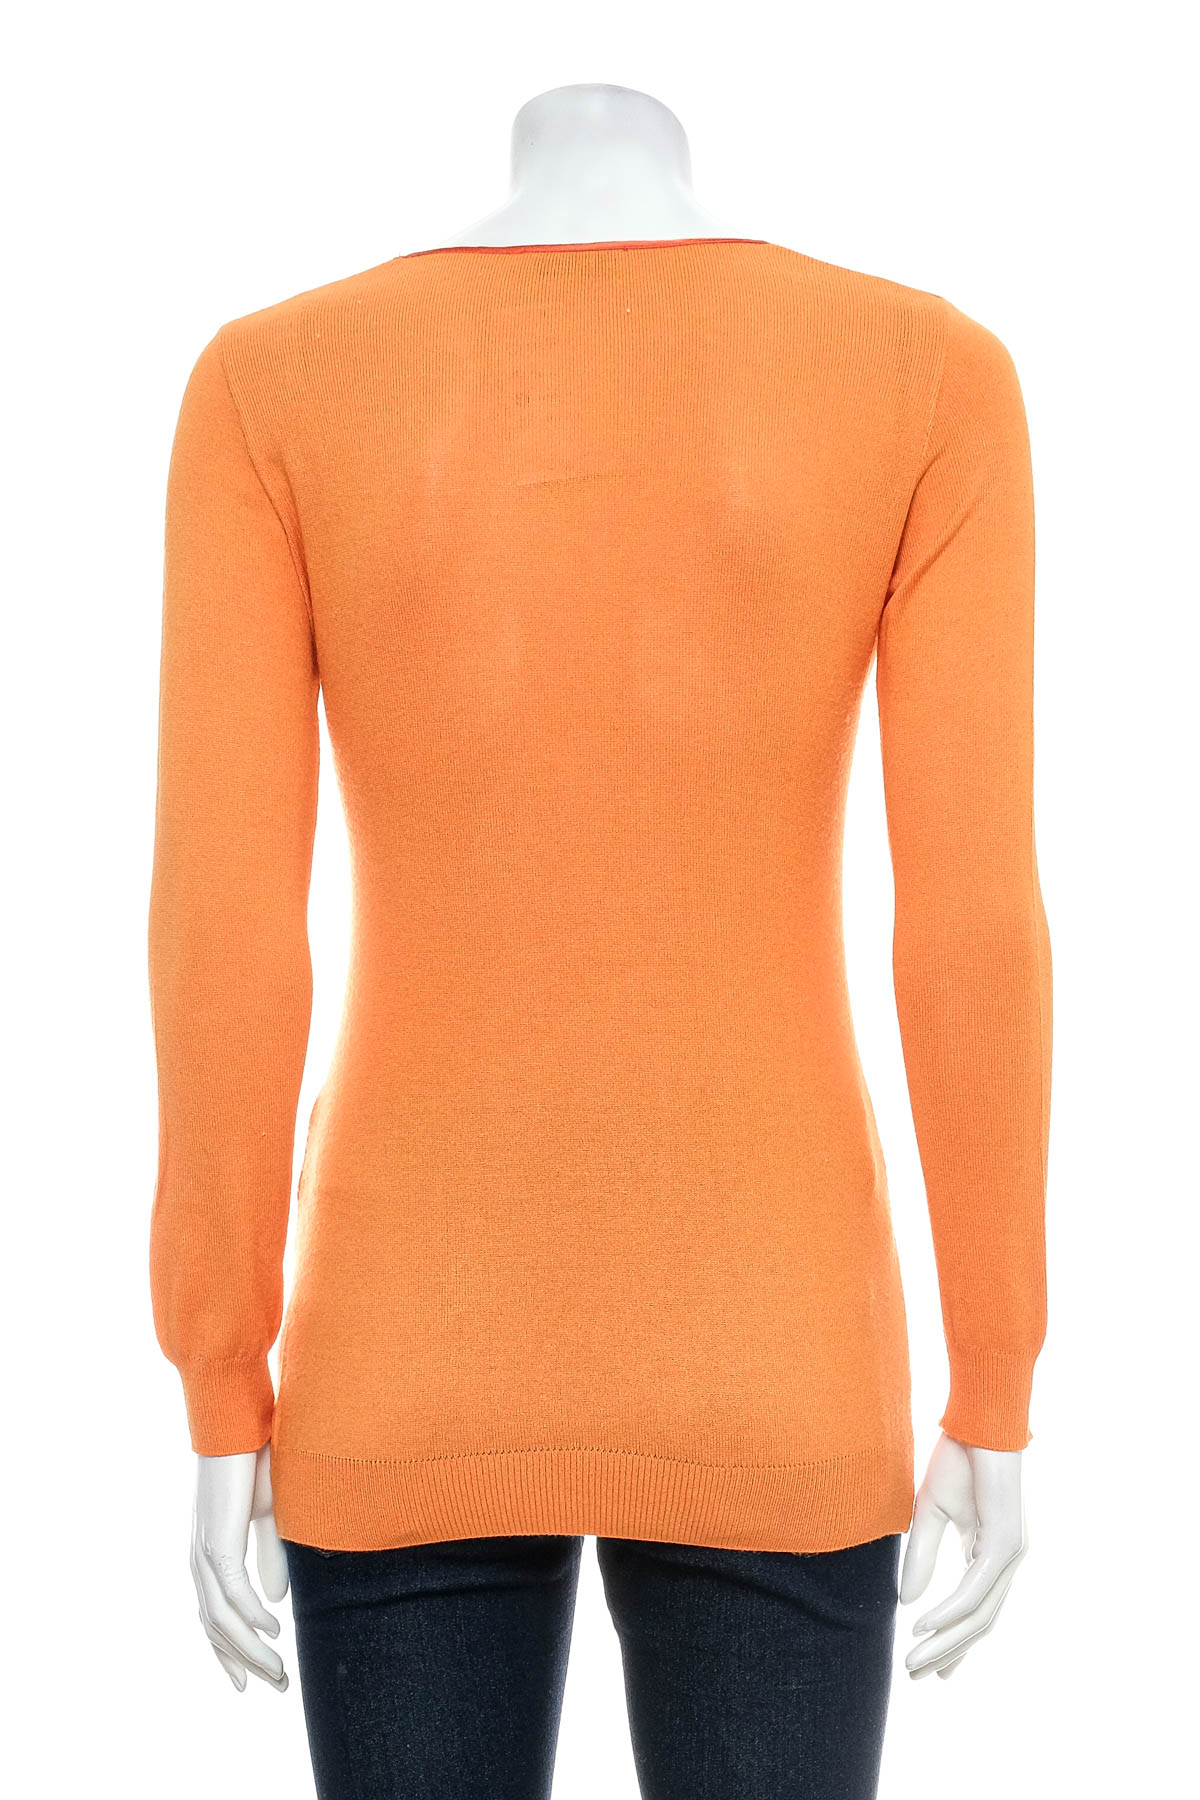 Women's sweater - Moschino Cheap And Chic - 1